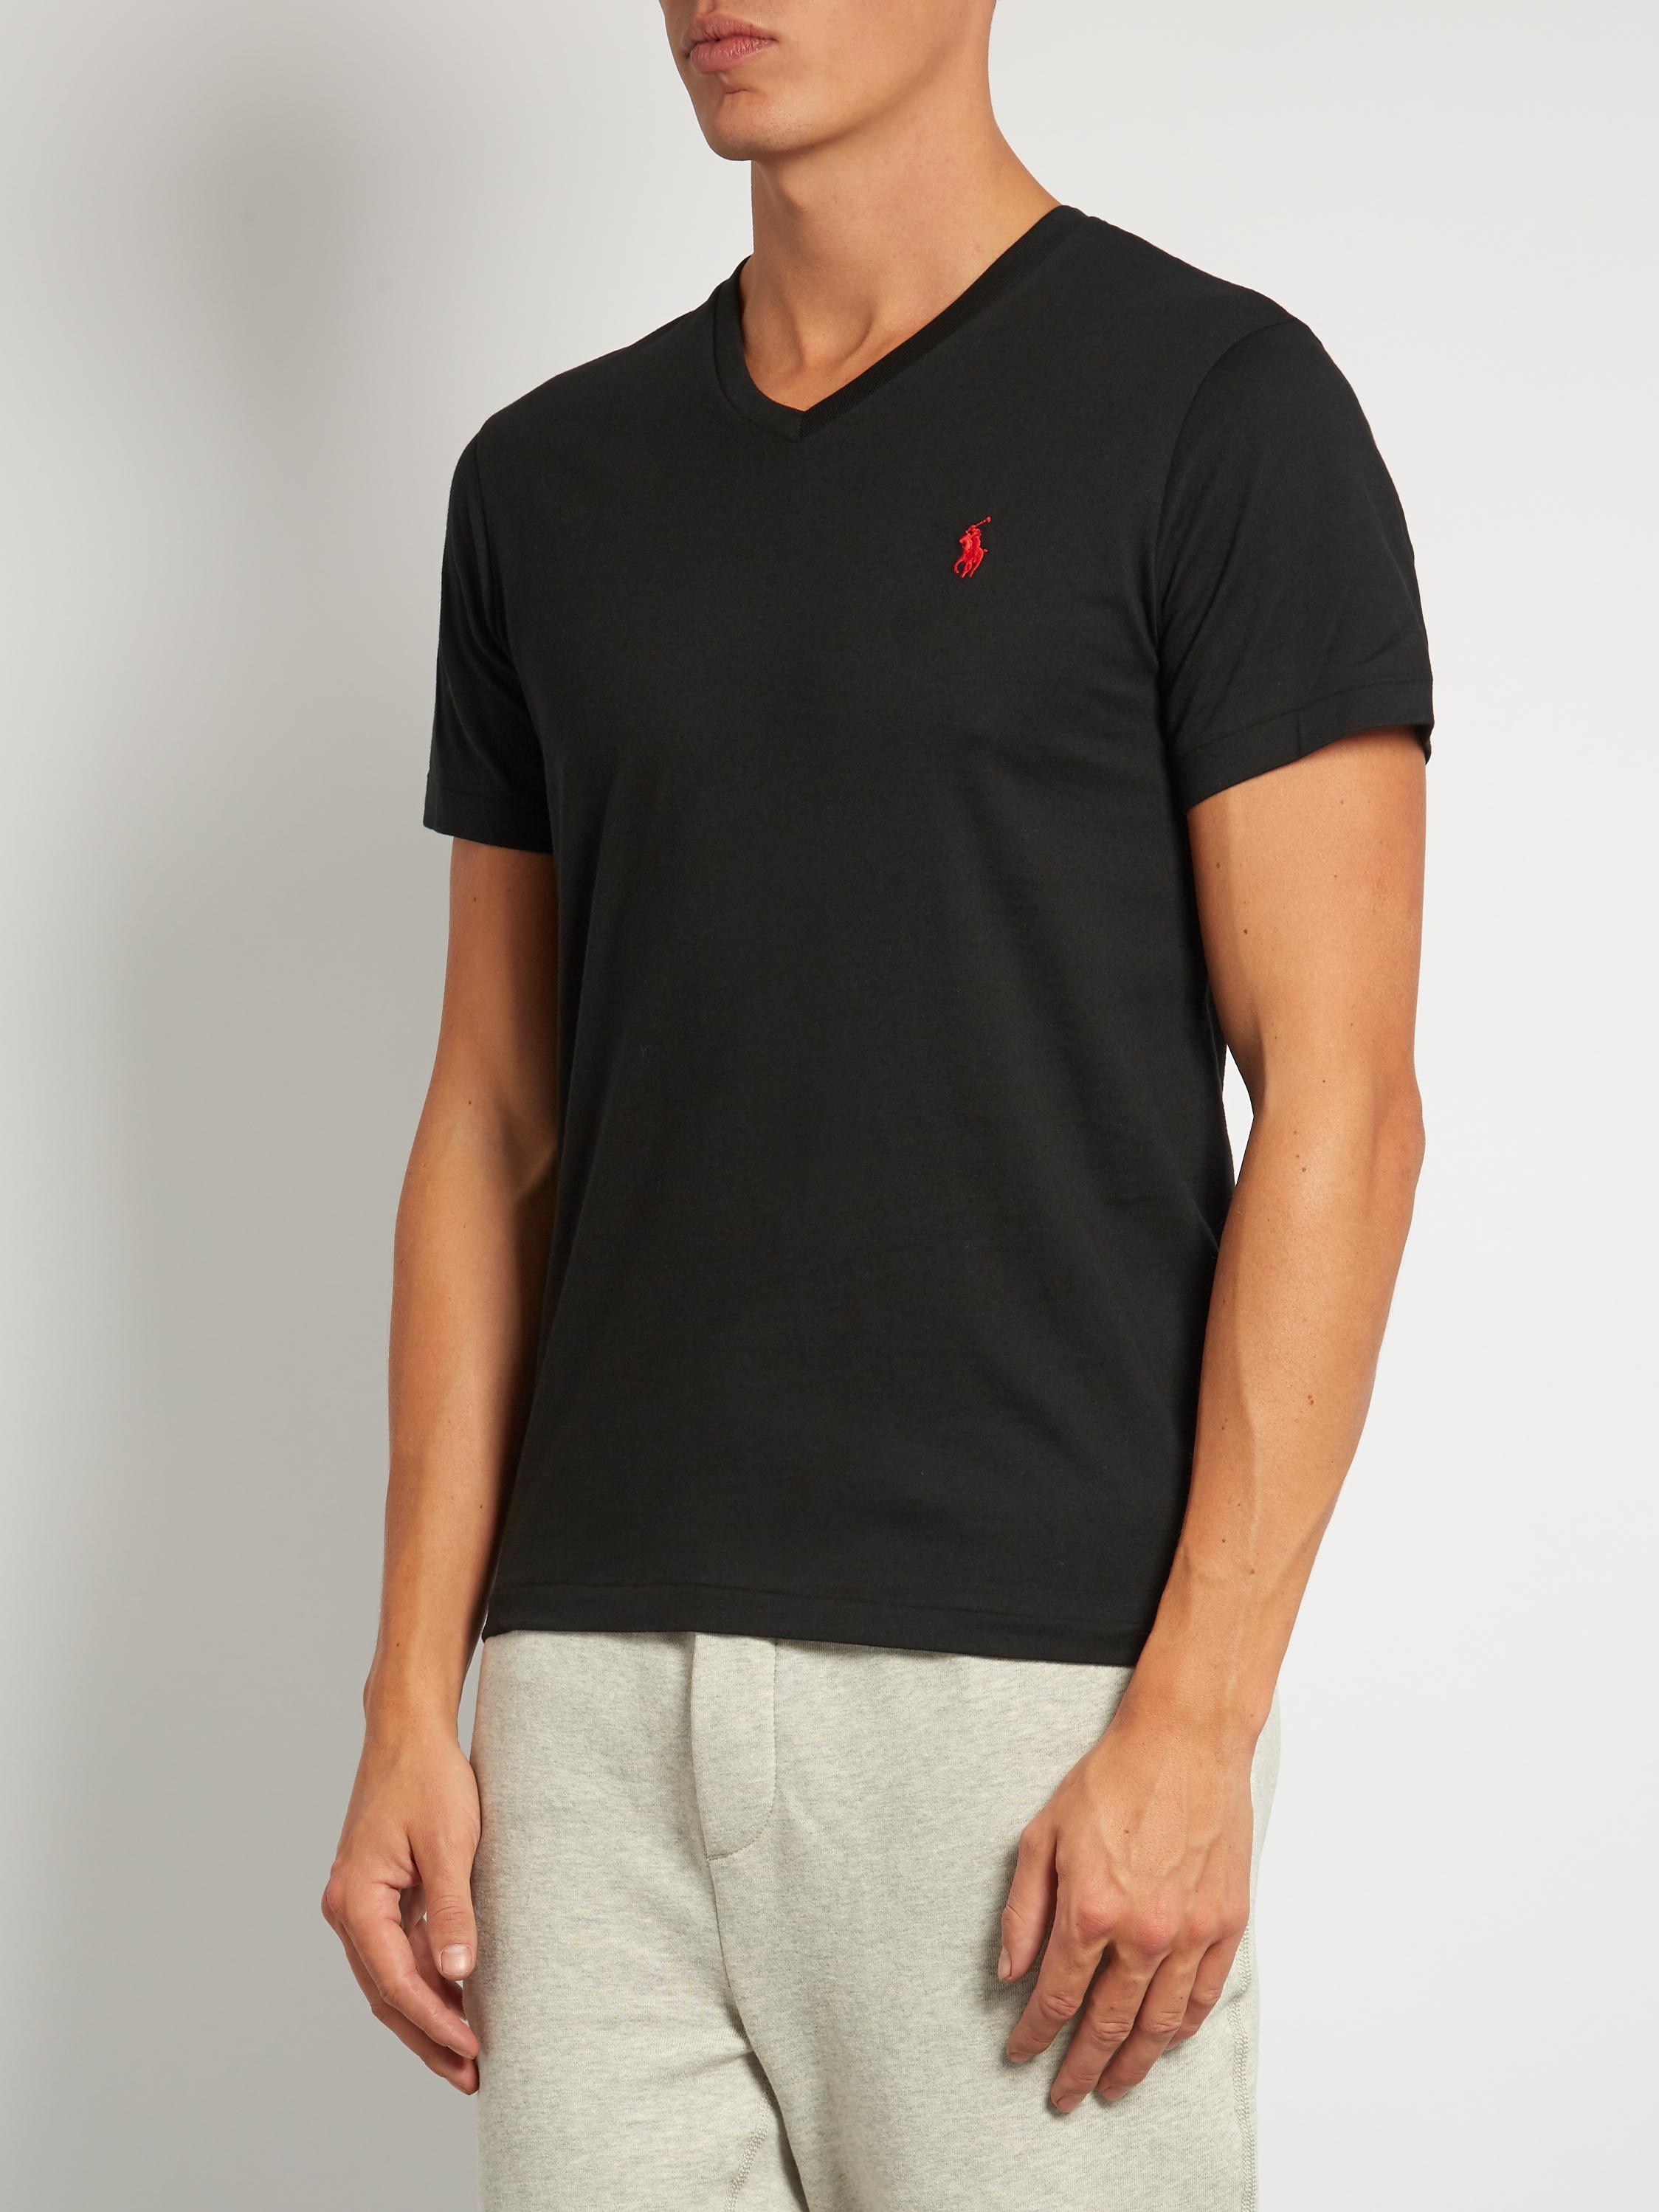 Polo Ralph Lauren V-neck Cotton T-shirt in Black for Men - Lyst